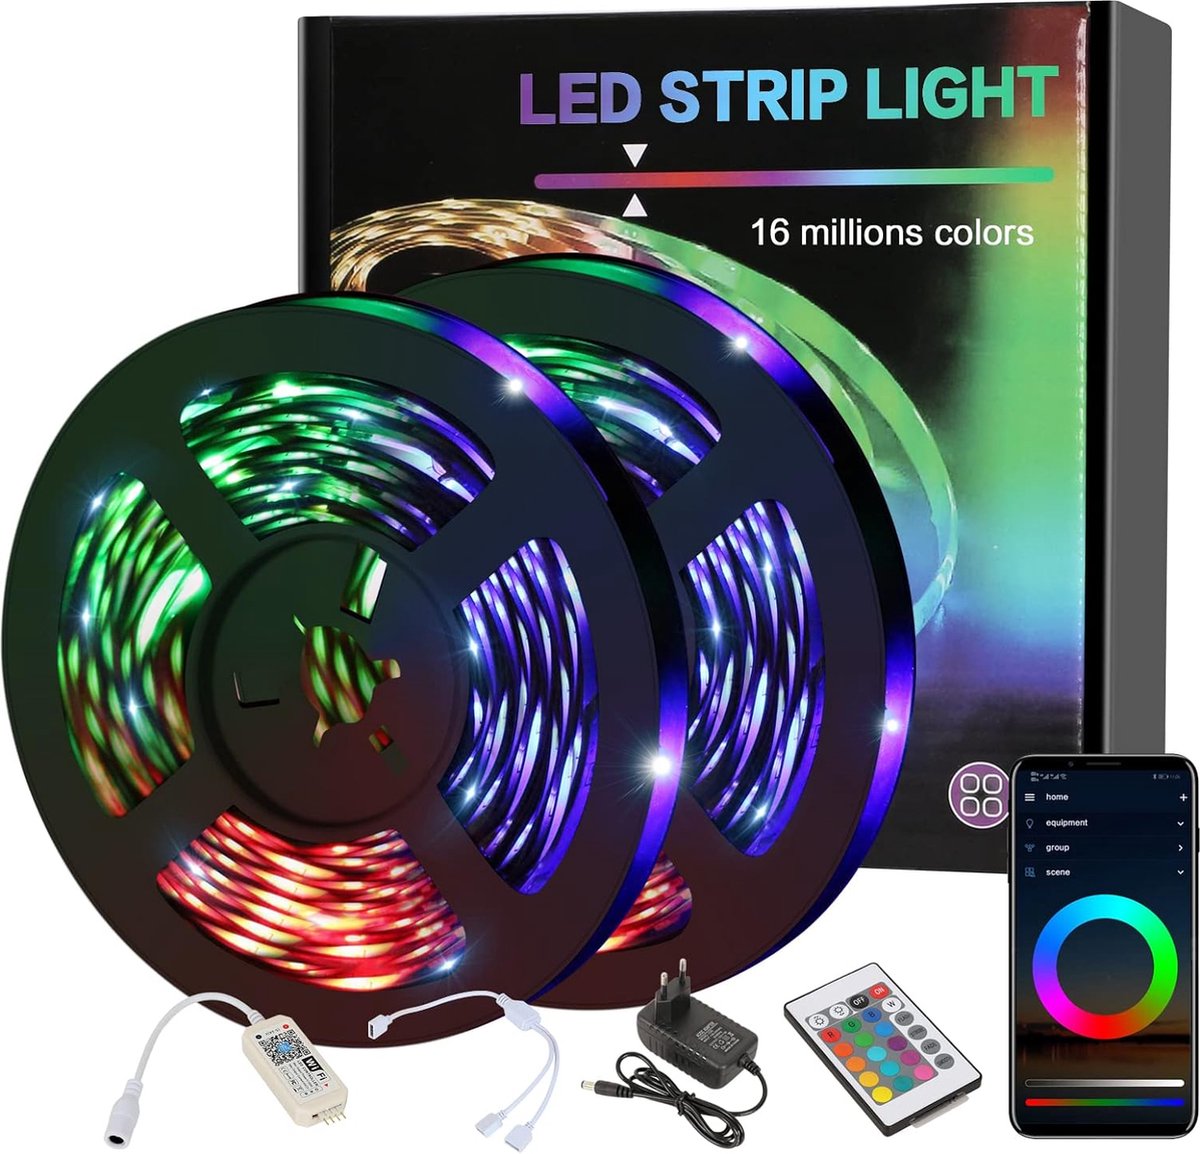 Goeco – LED Strip 10 meter – Light strip – RGB LED Verlichting – met afstandsbediening – licht strip dimbaar – gaming accesoires